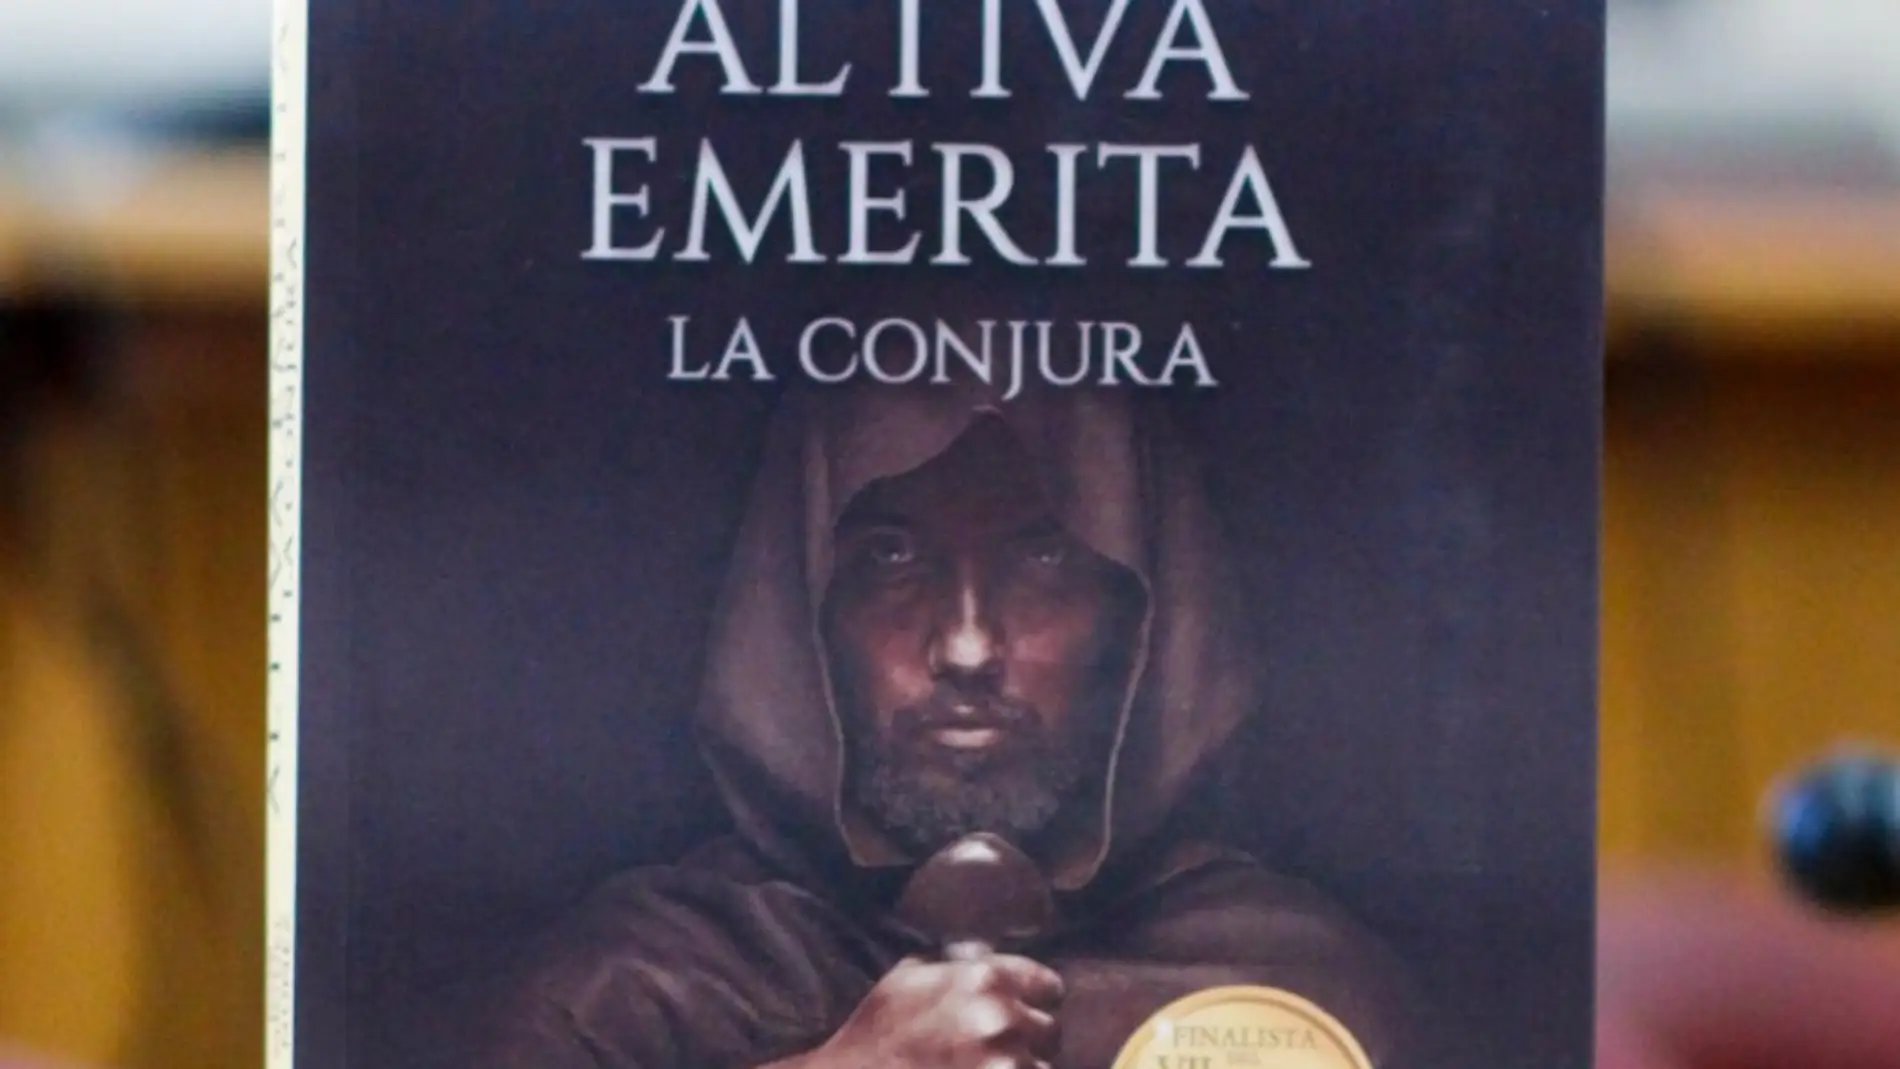 El esplendor de Emérita en la época visigoda llega en el libro 'Altiva emérita'